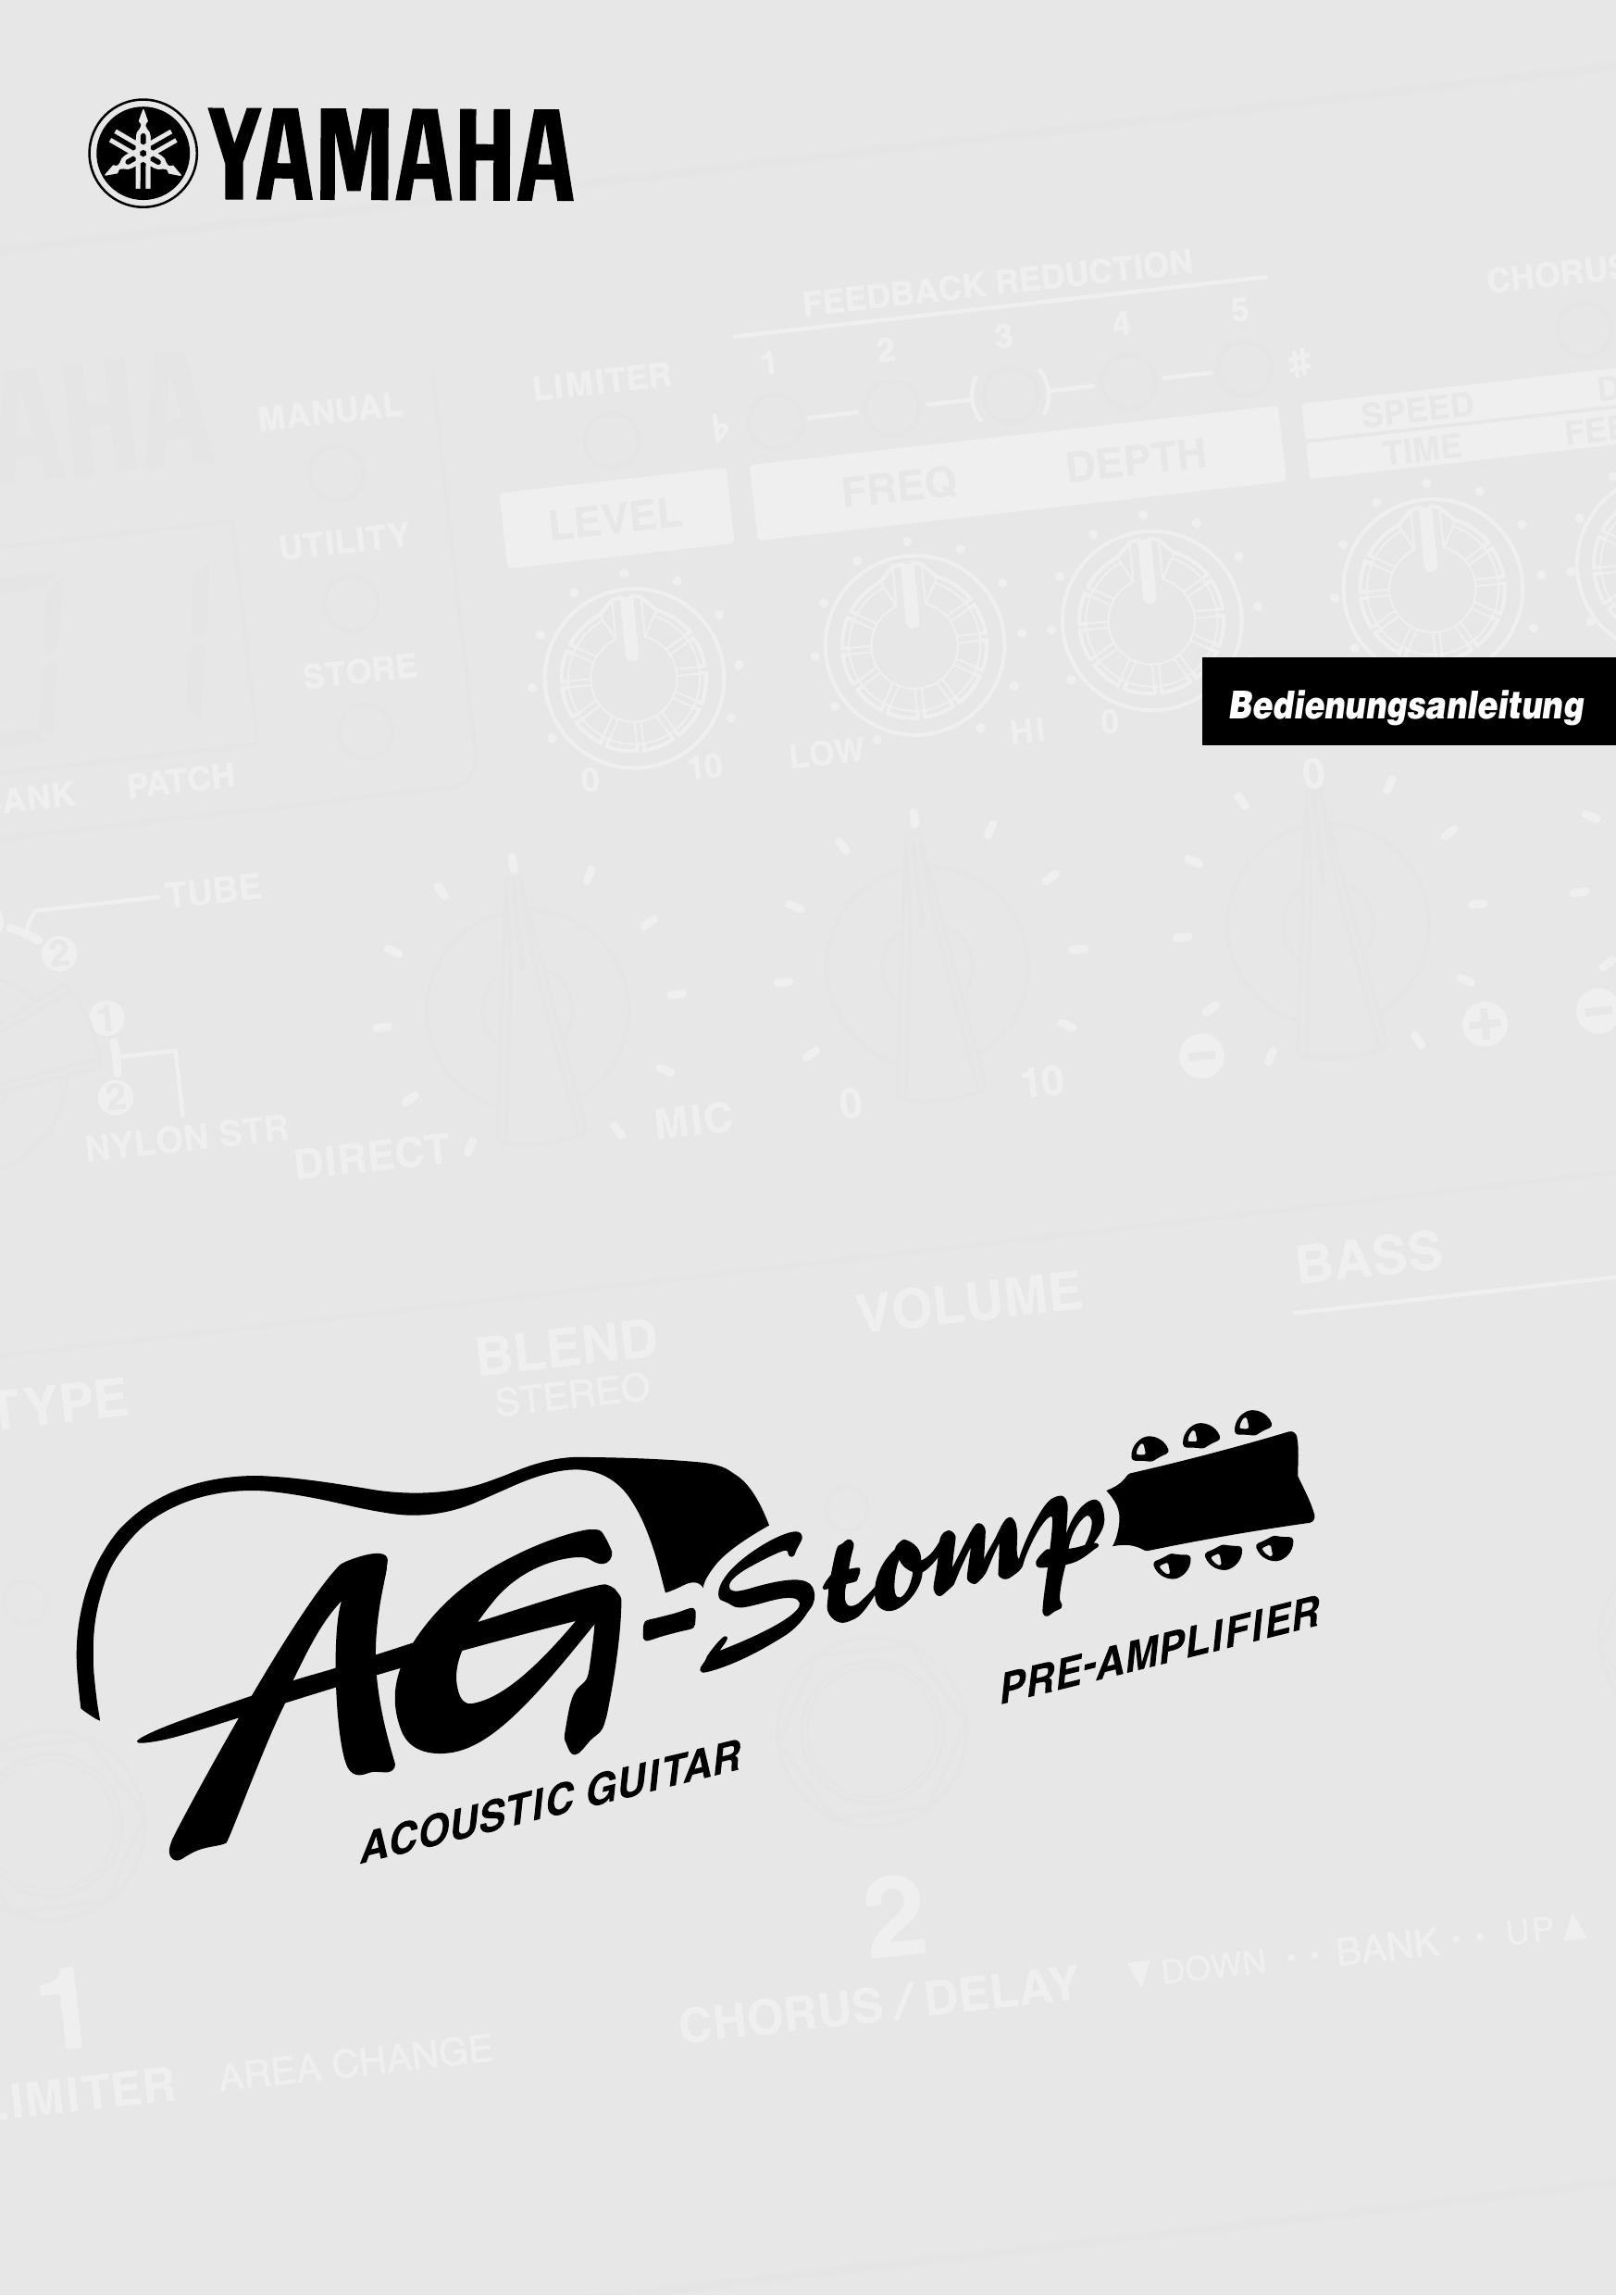 Yamaha AG-Stomp Guitar User Manual